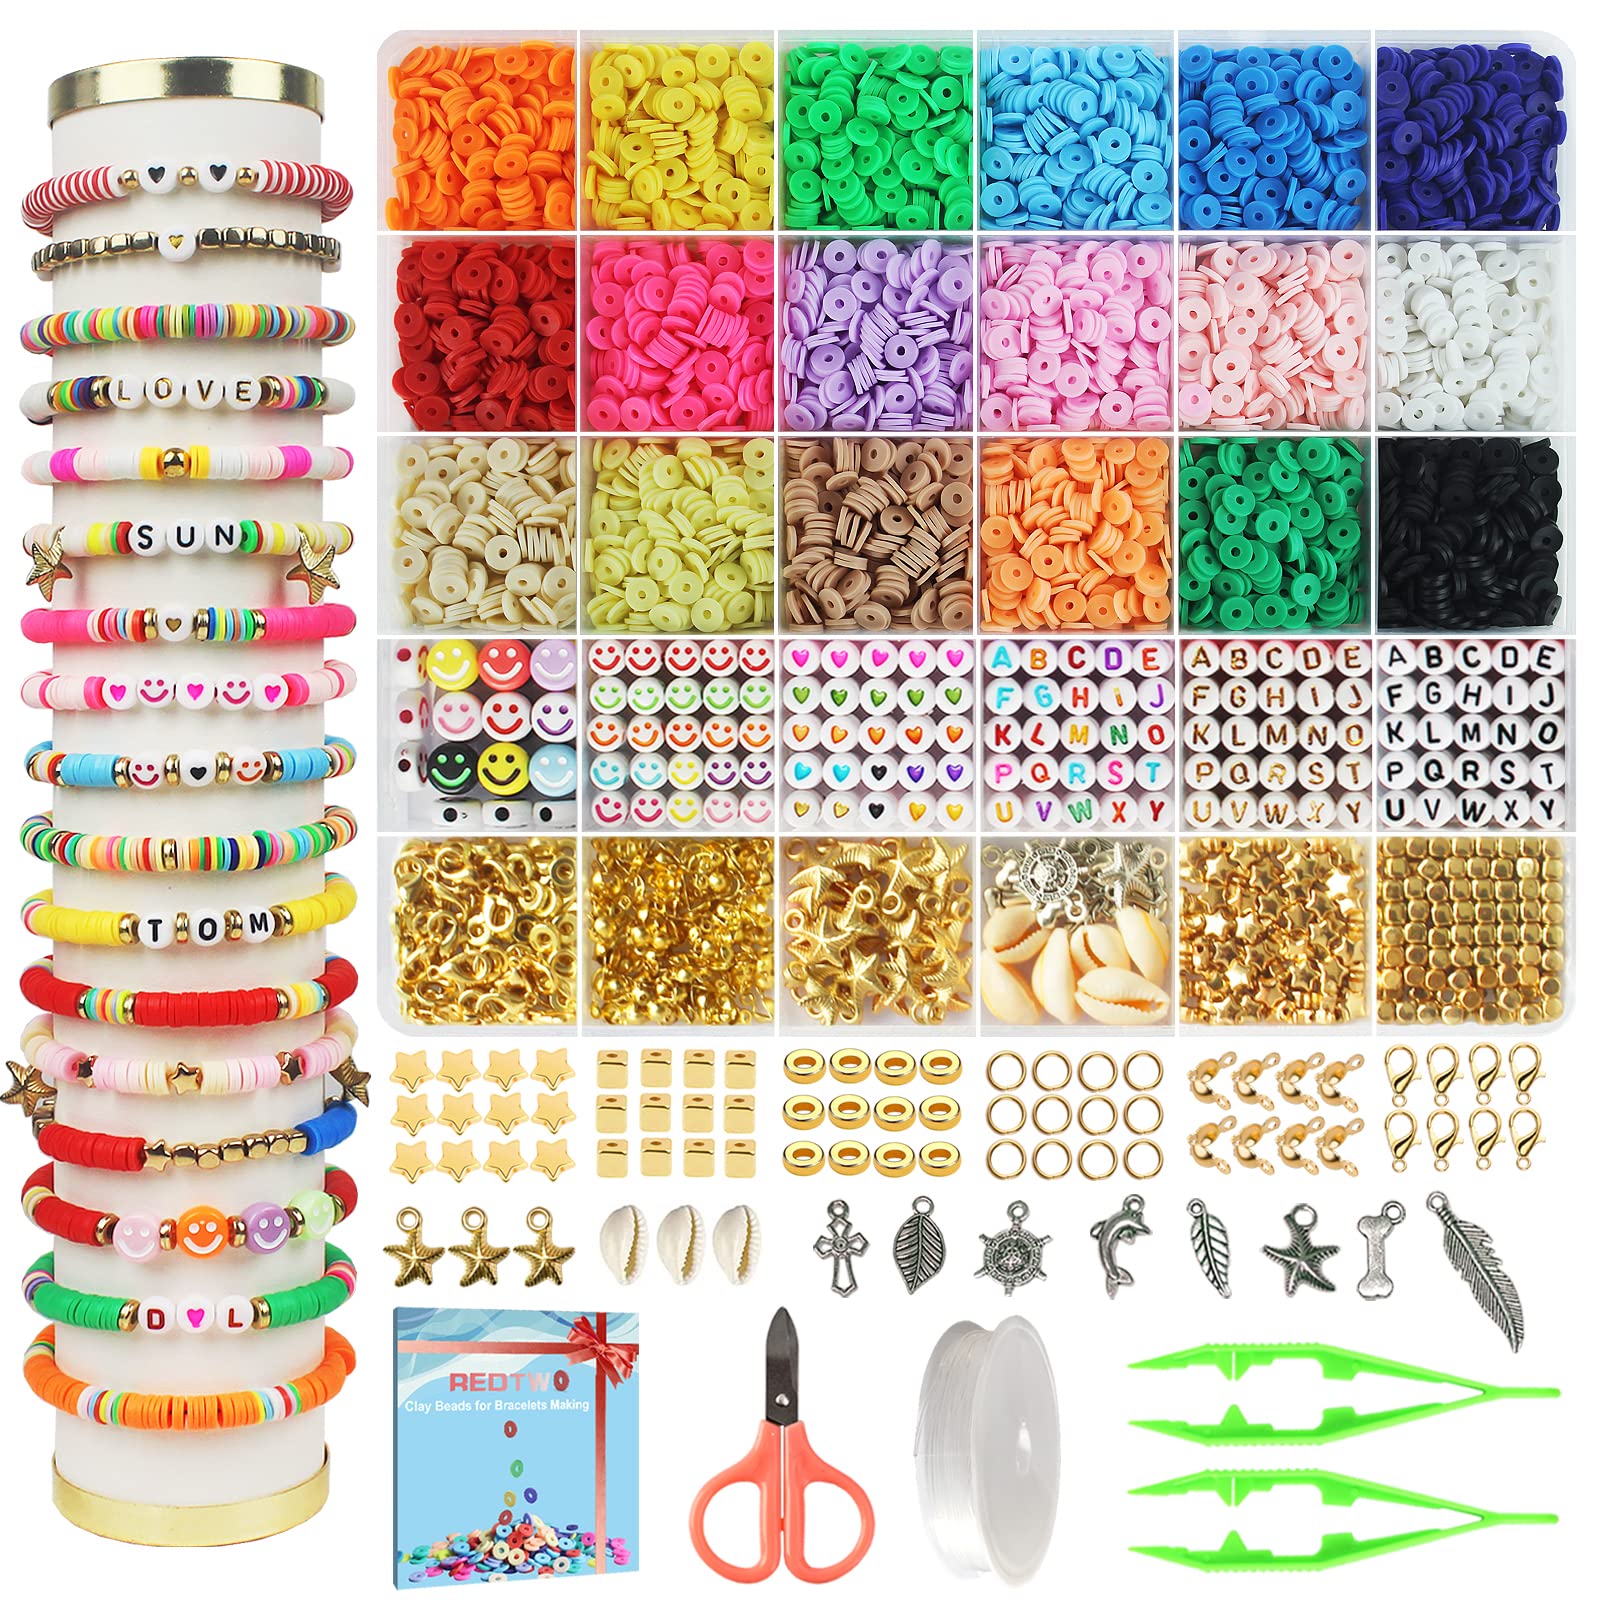 Charm Bracelet Making Kit, 66 Pcs Charm Bracelet Making Kit Jewelry Making  Supplies, Gift Boxed Charm Bracelet Girl DIY Craft Gift Kit For Teen Girls